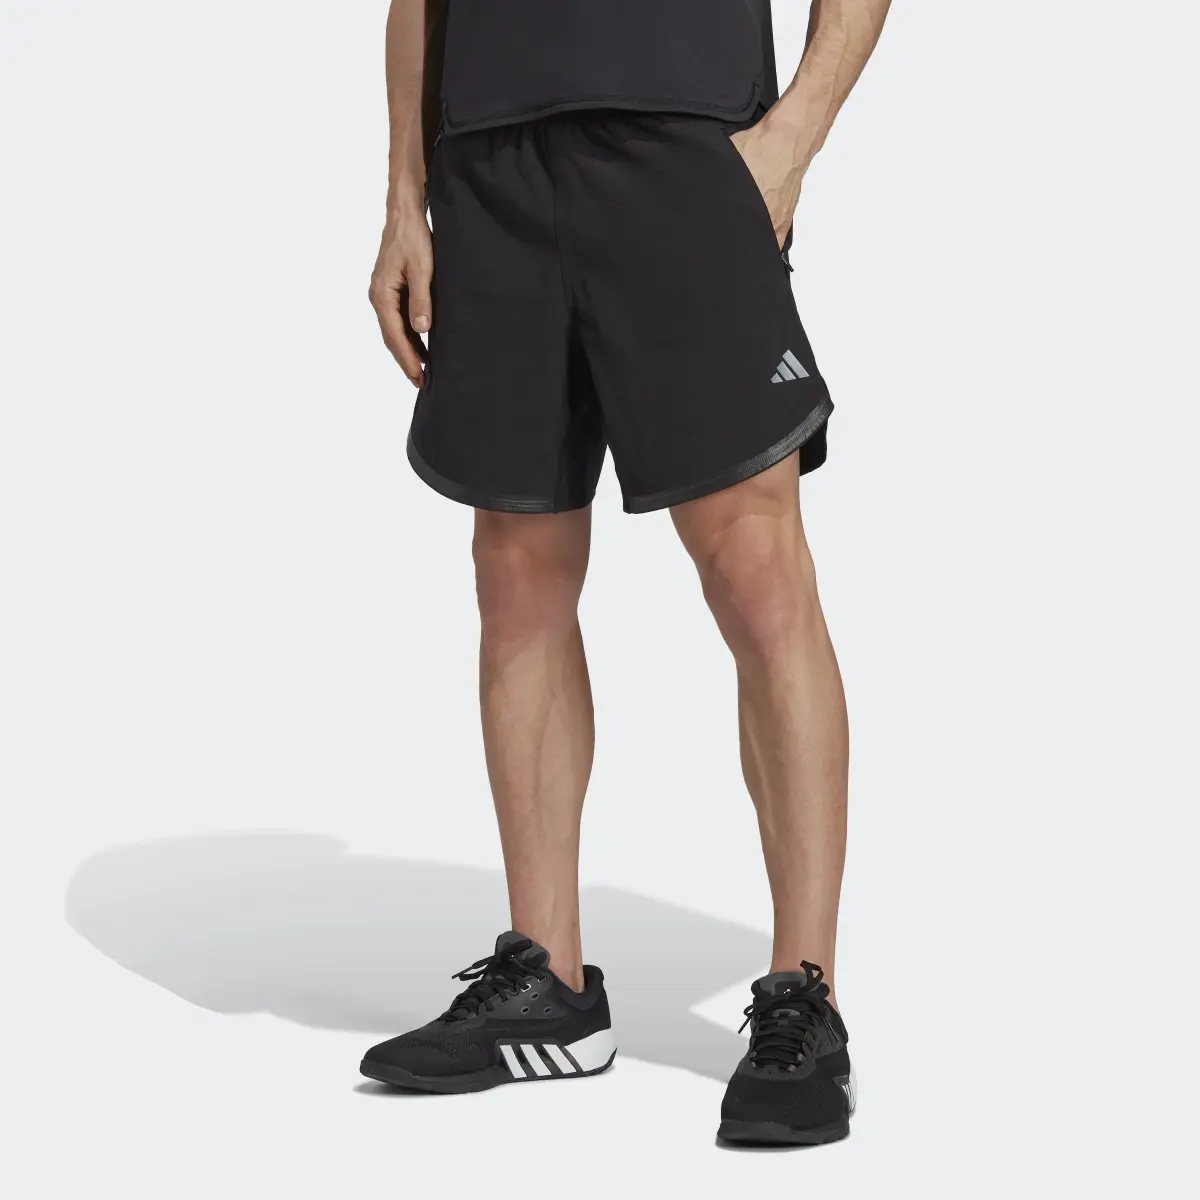 Adidas Designed for Training CORDURA® Workout Shorts. 1